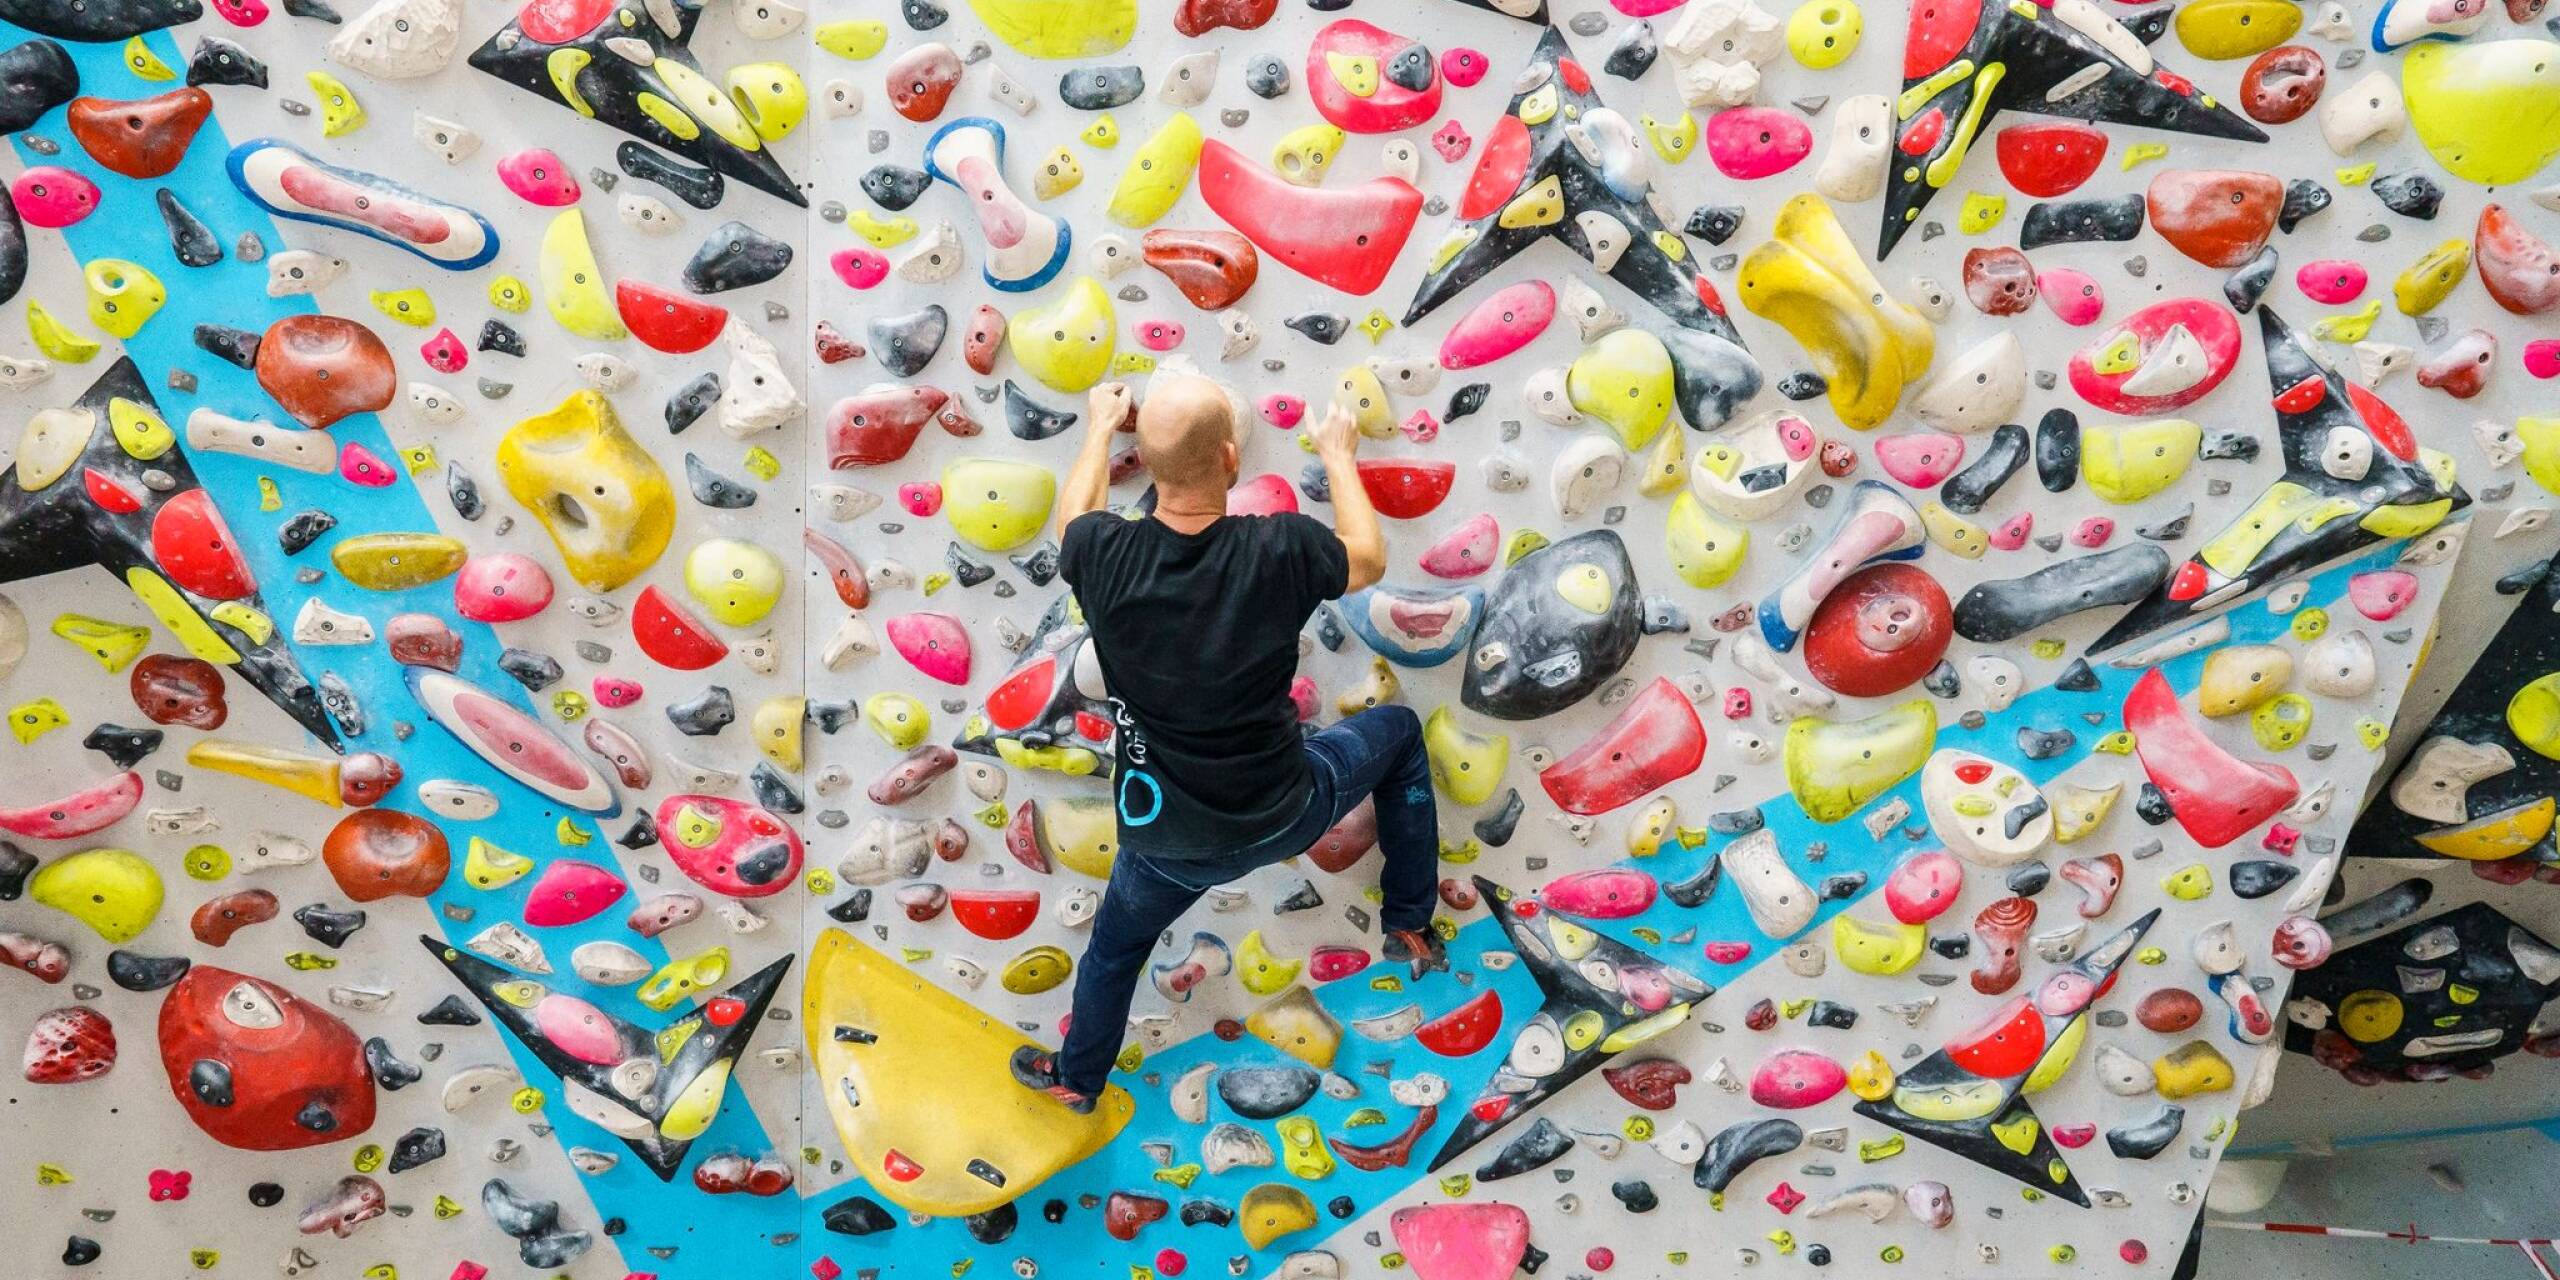 Wer hoch hinaus will, versucht sich gern an einer Kletterwand - Impressionen aus der Kletterhalle «Boulderwelt Frankfurt».